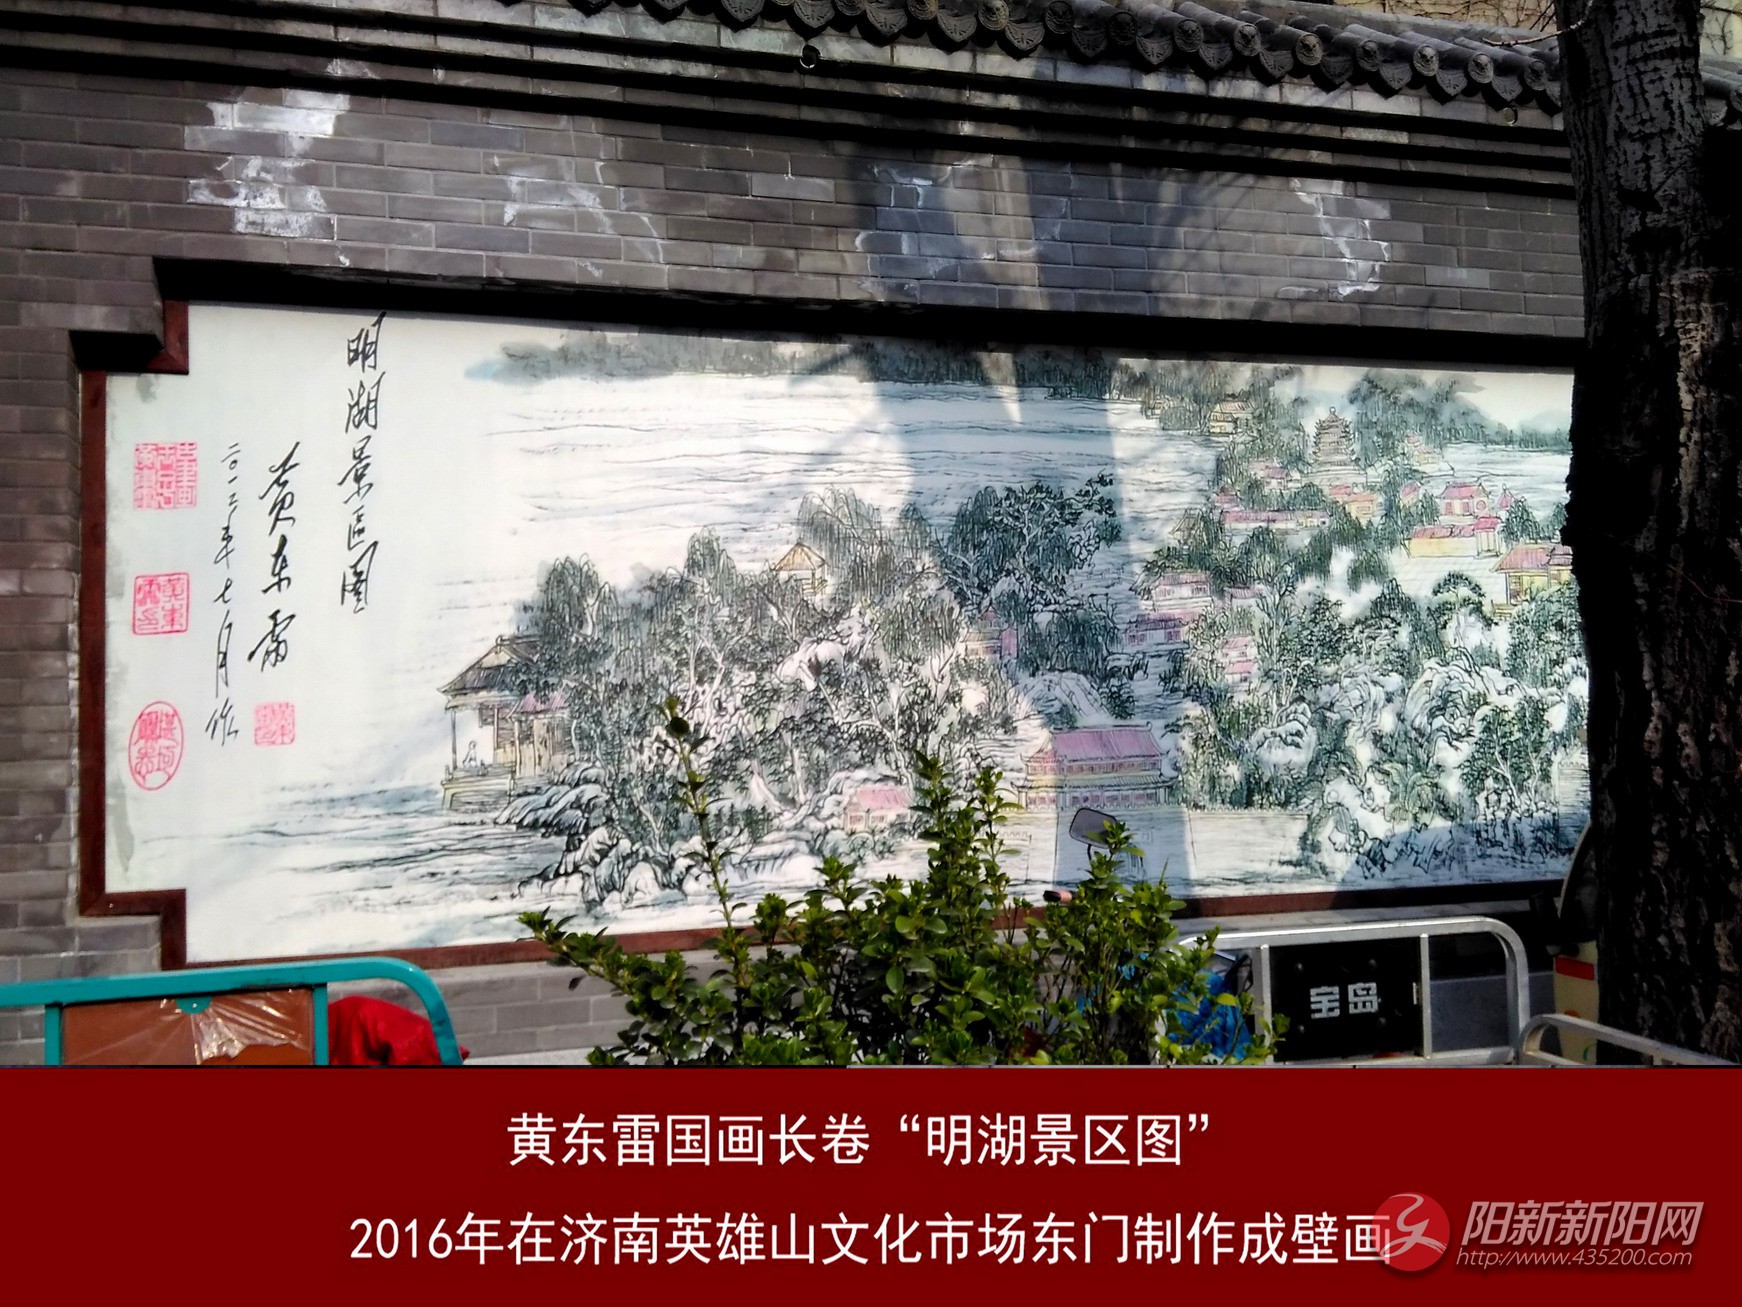 黄东雷 明湖景区图壁画-002.jpg